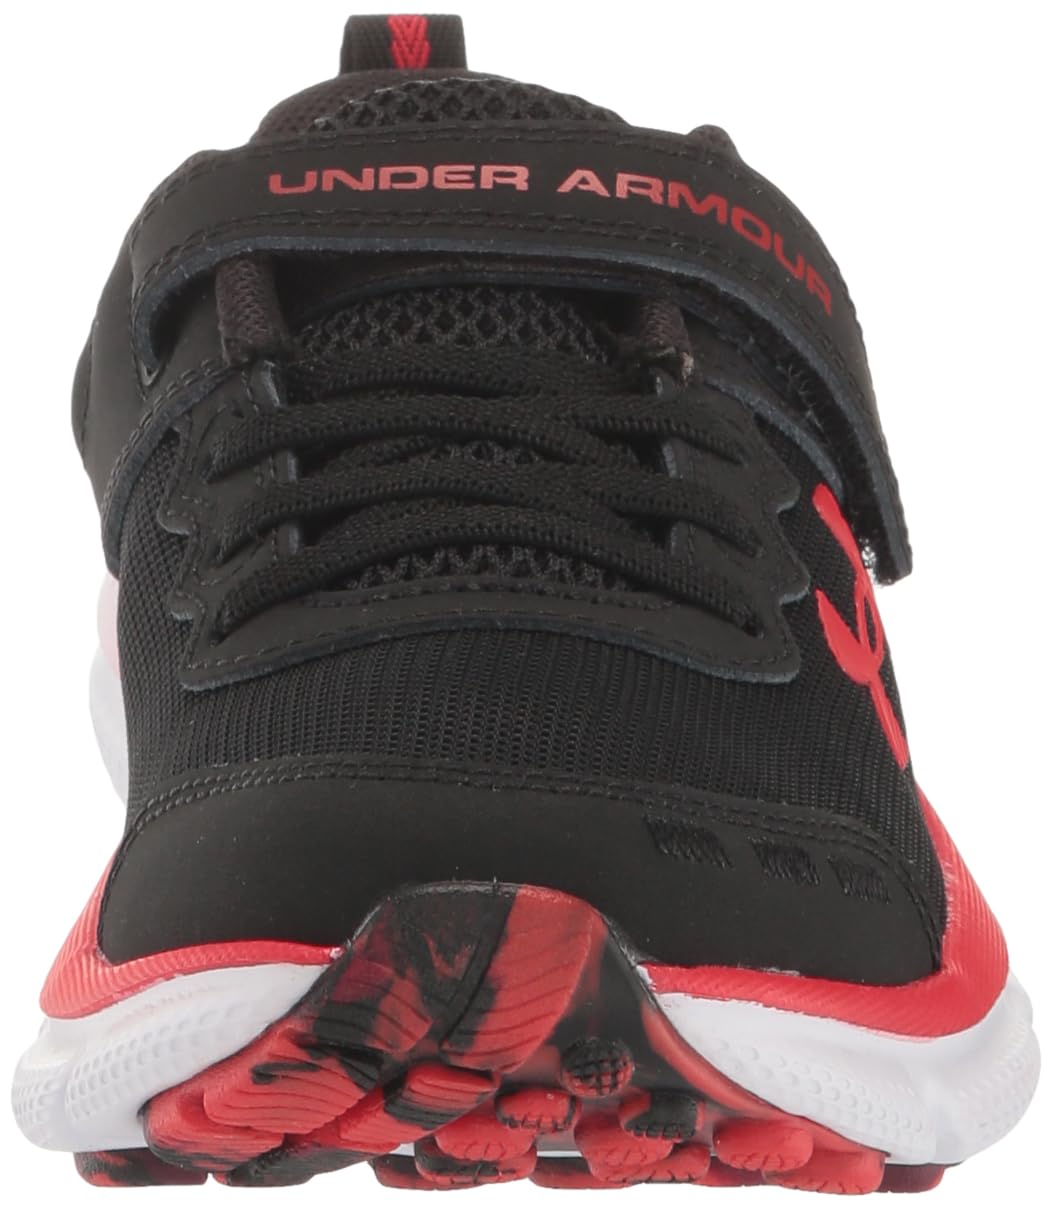 Under Armour Unisex-Child Pre School Assert 10 Alternate Closure Running Shoe